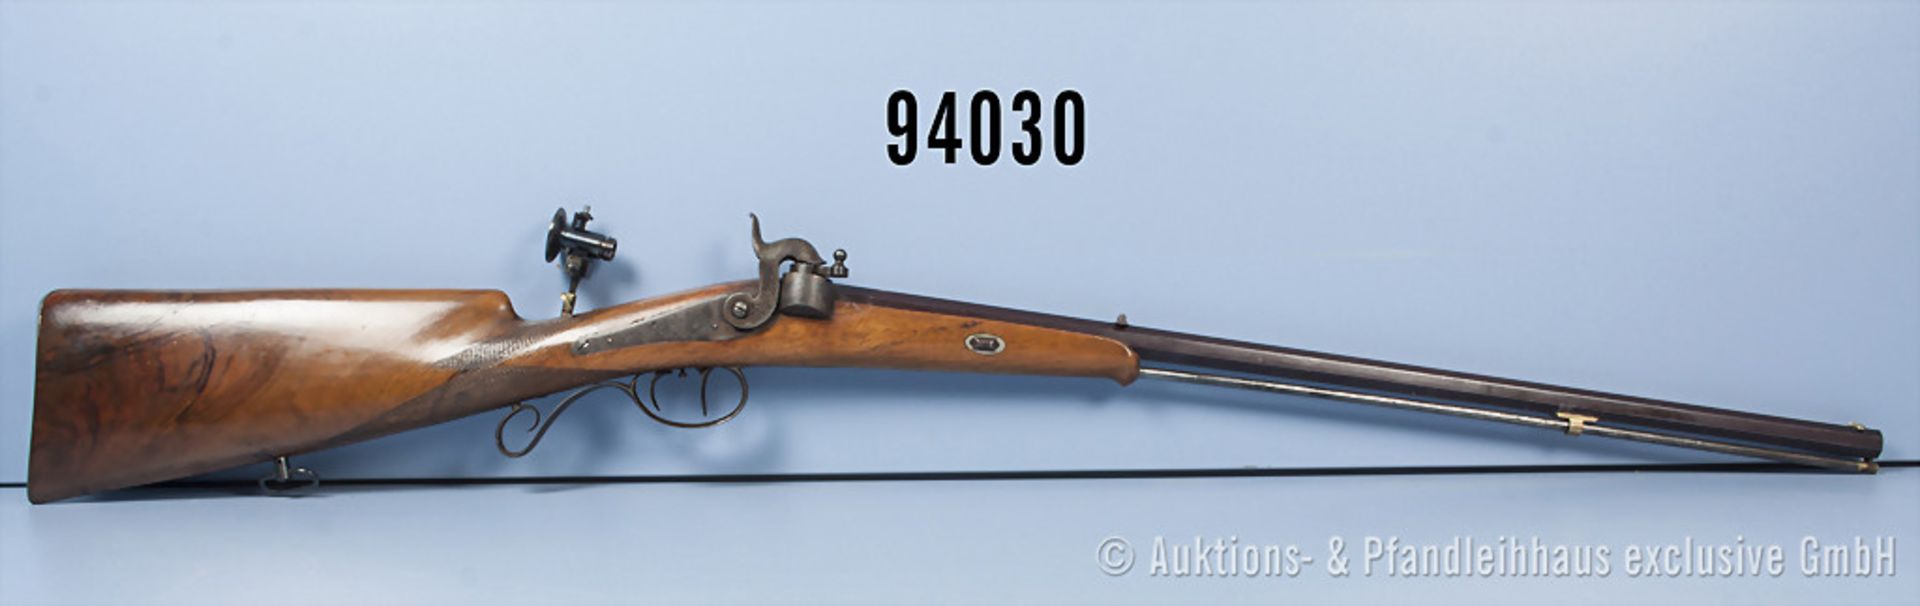 Zündnadelgewehr, vermutl. Sachsen um 1860, Achtkantlauf, Ladestock und Diopter vermutl. ergänzt, L